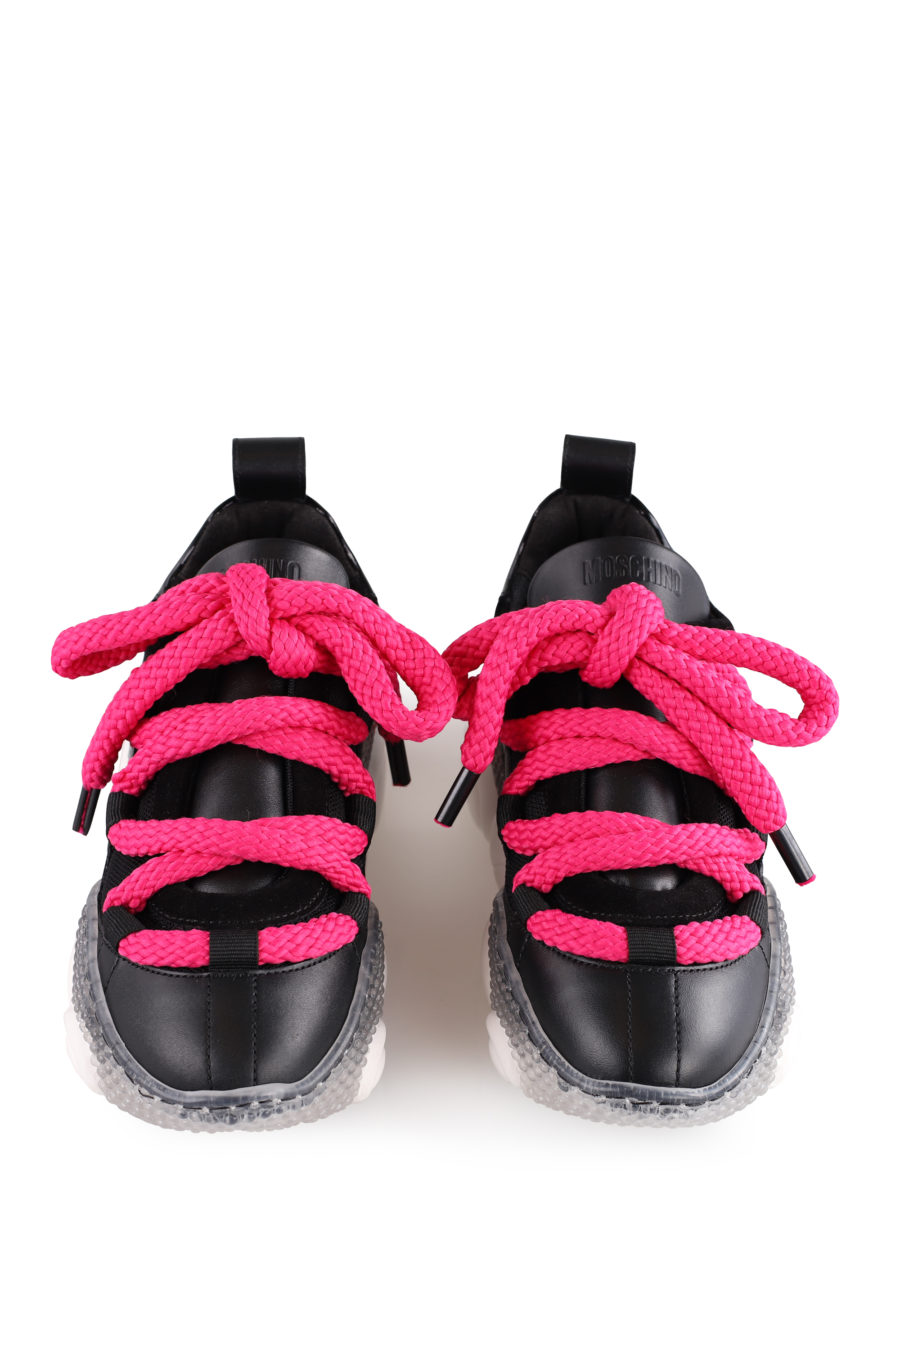 Zapatillas negras "BubbleTeddy" con maxicordones color rosa - 70f0b7d162cc7a7bc184bce457a818f61e4b6527